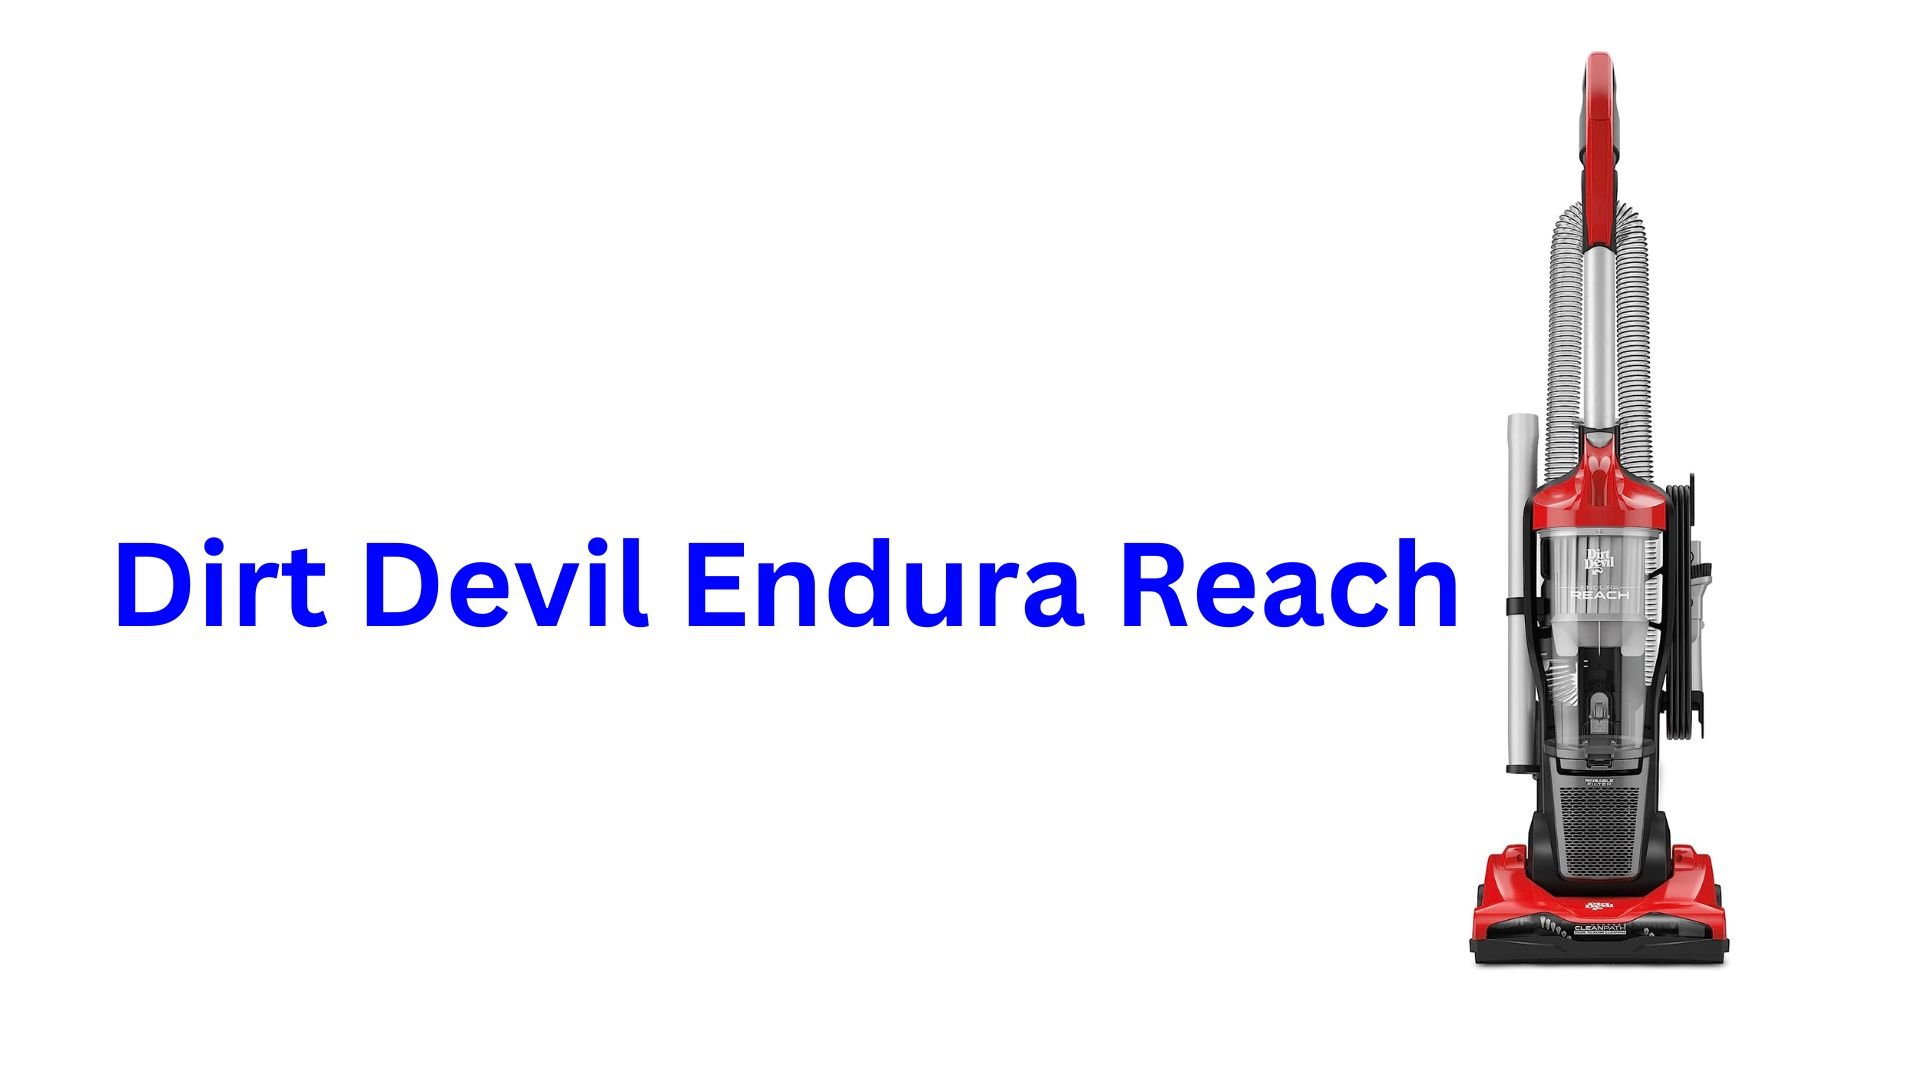 Dirt Devil Endura Reach reviews